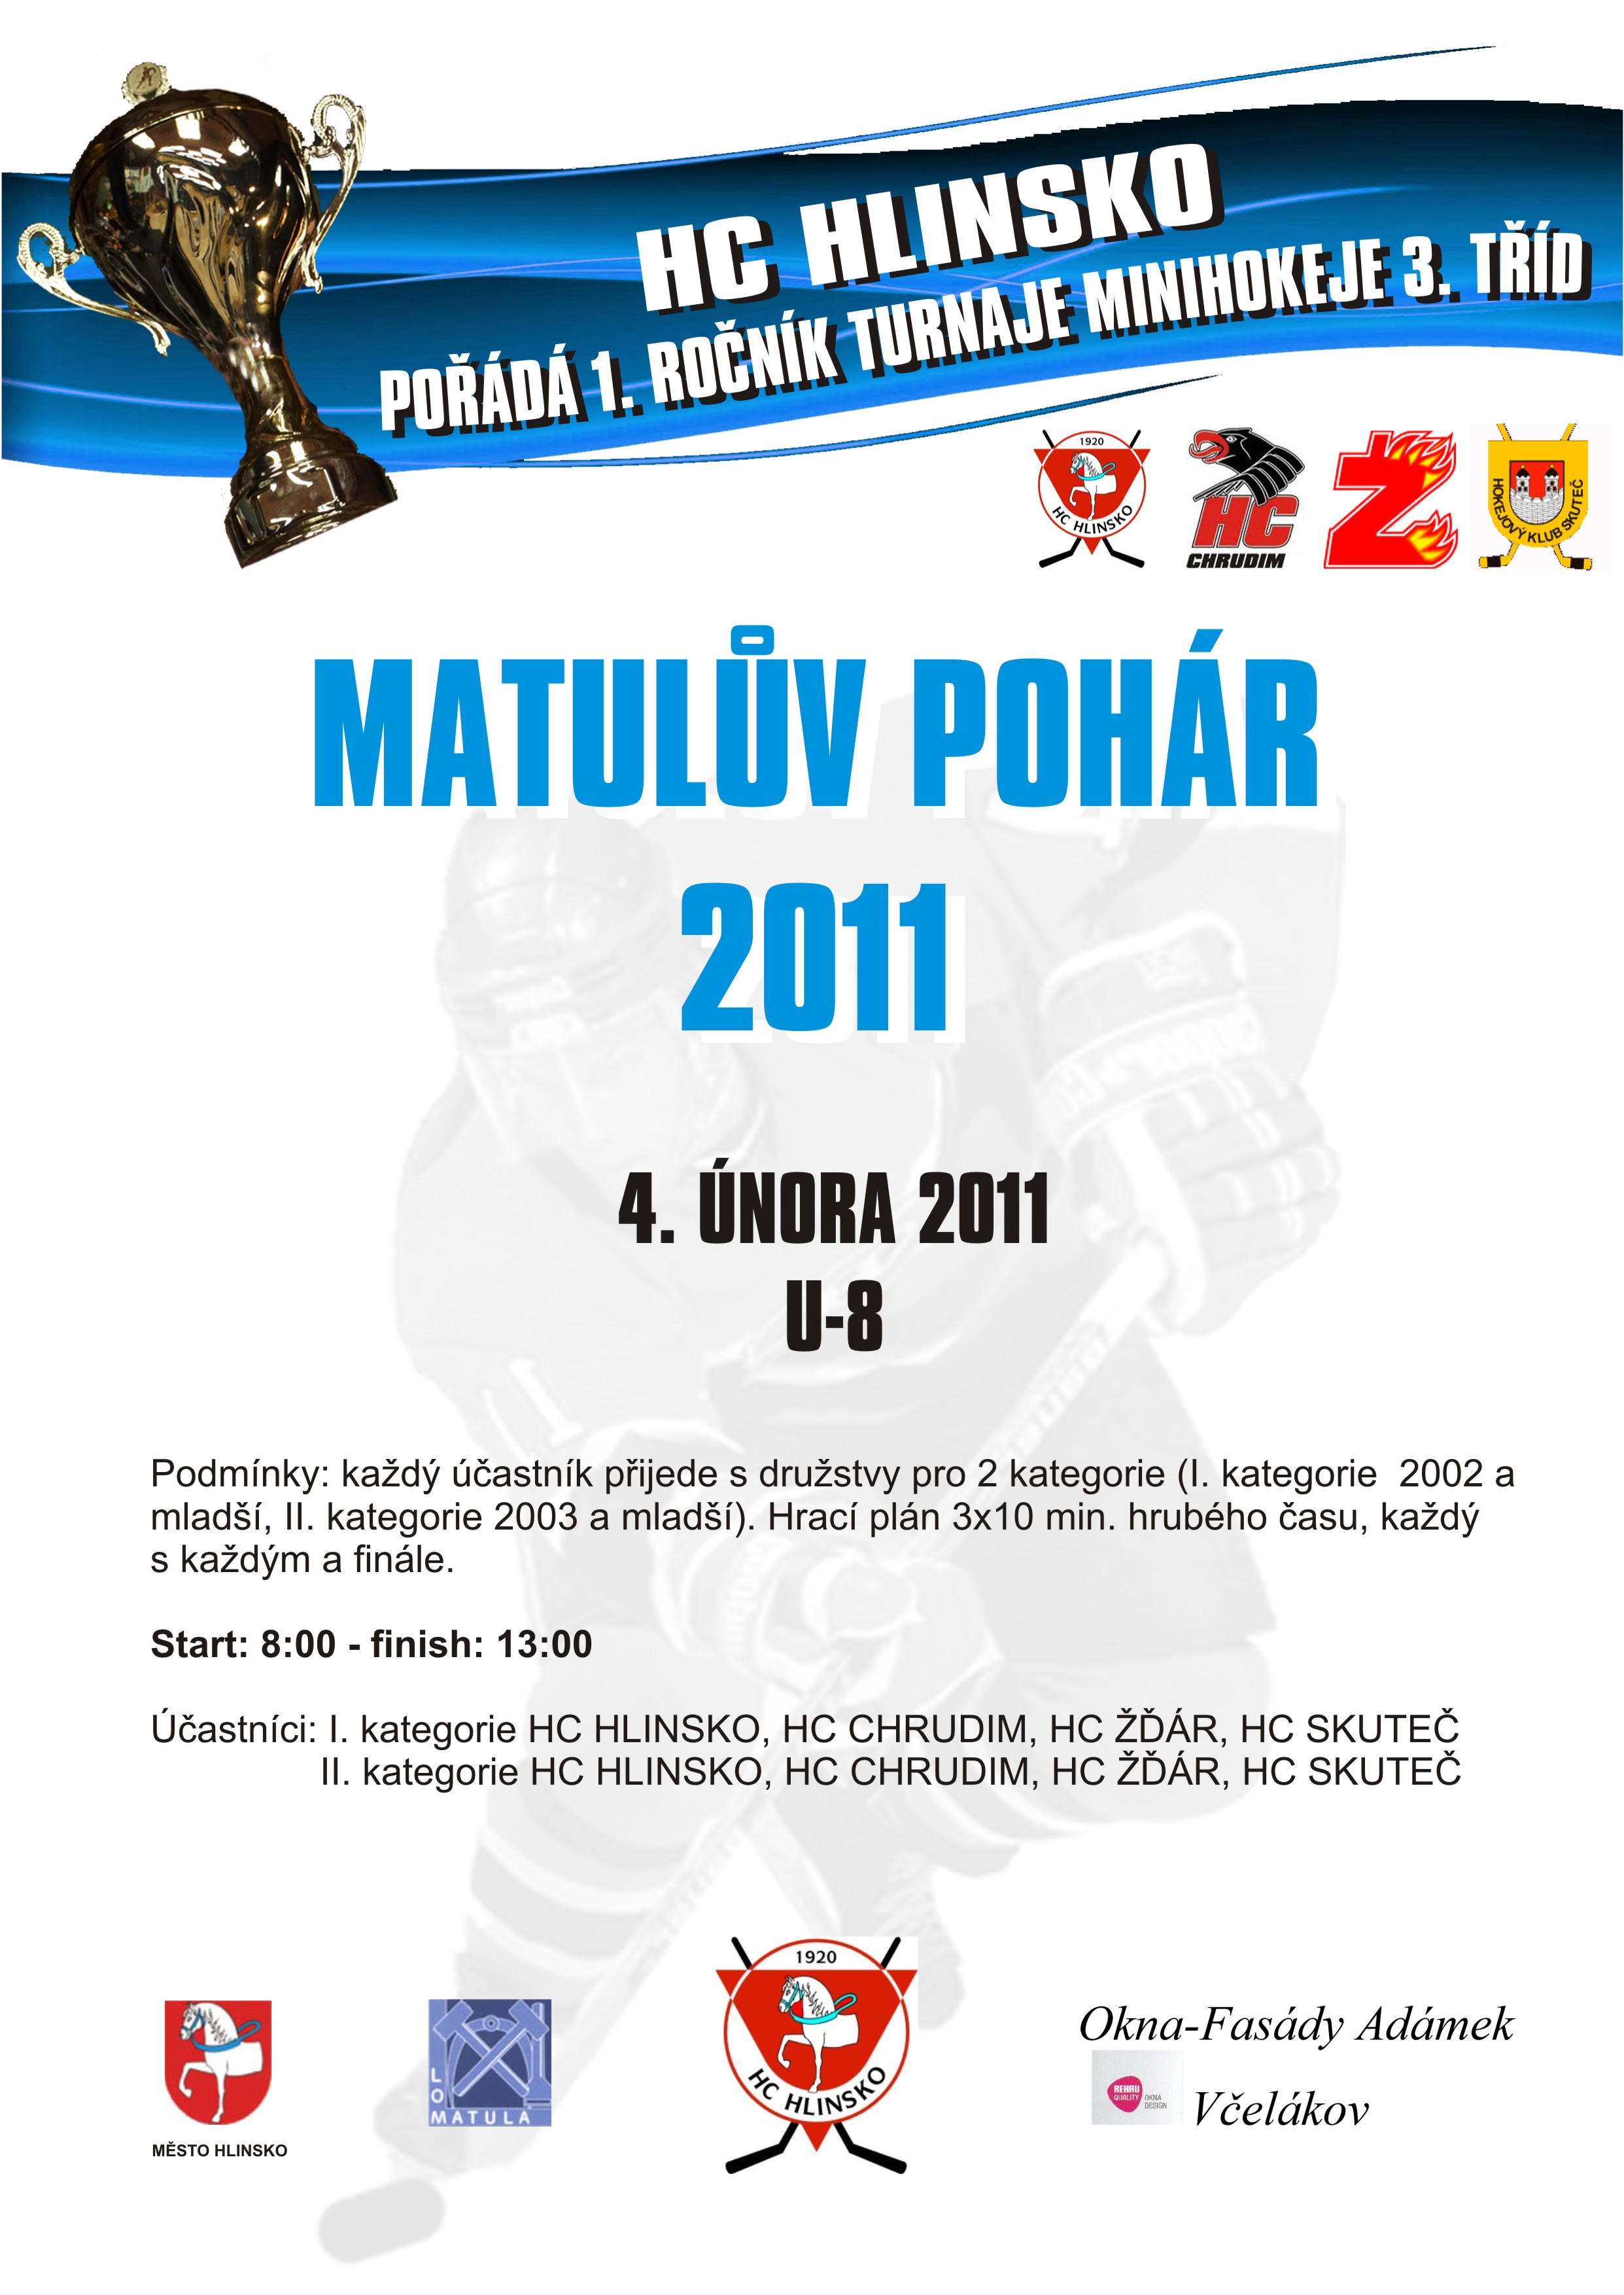 1.ročník turnaje o Matulův pohár startuje v pátek 4.2.2011